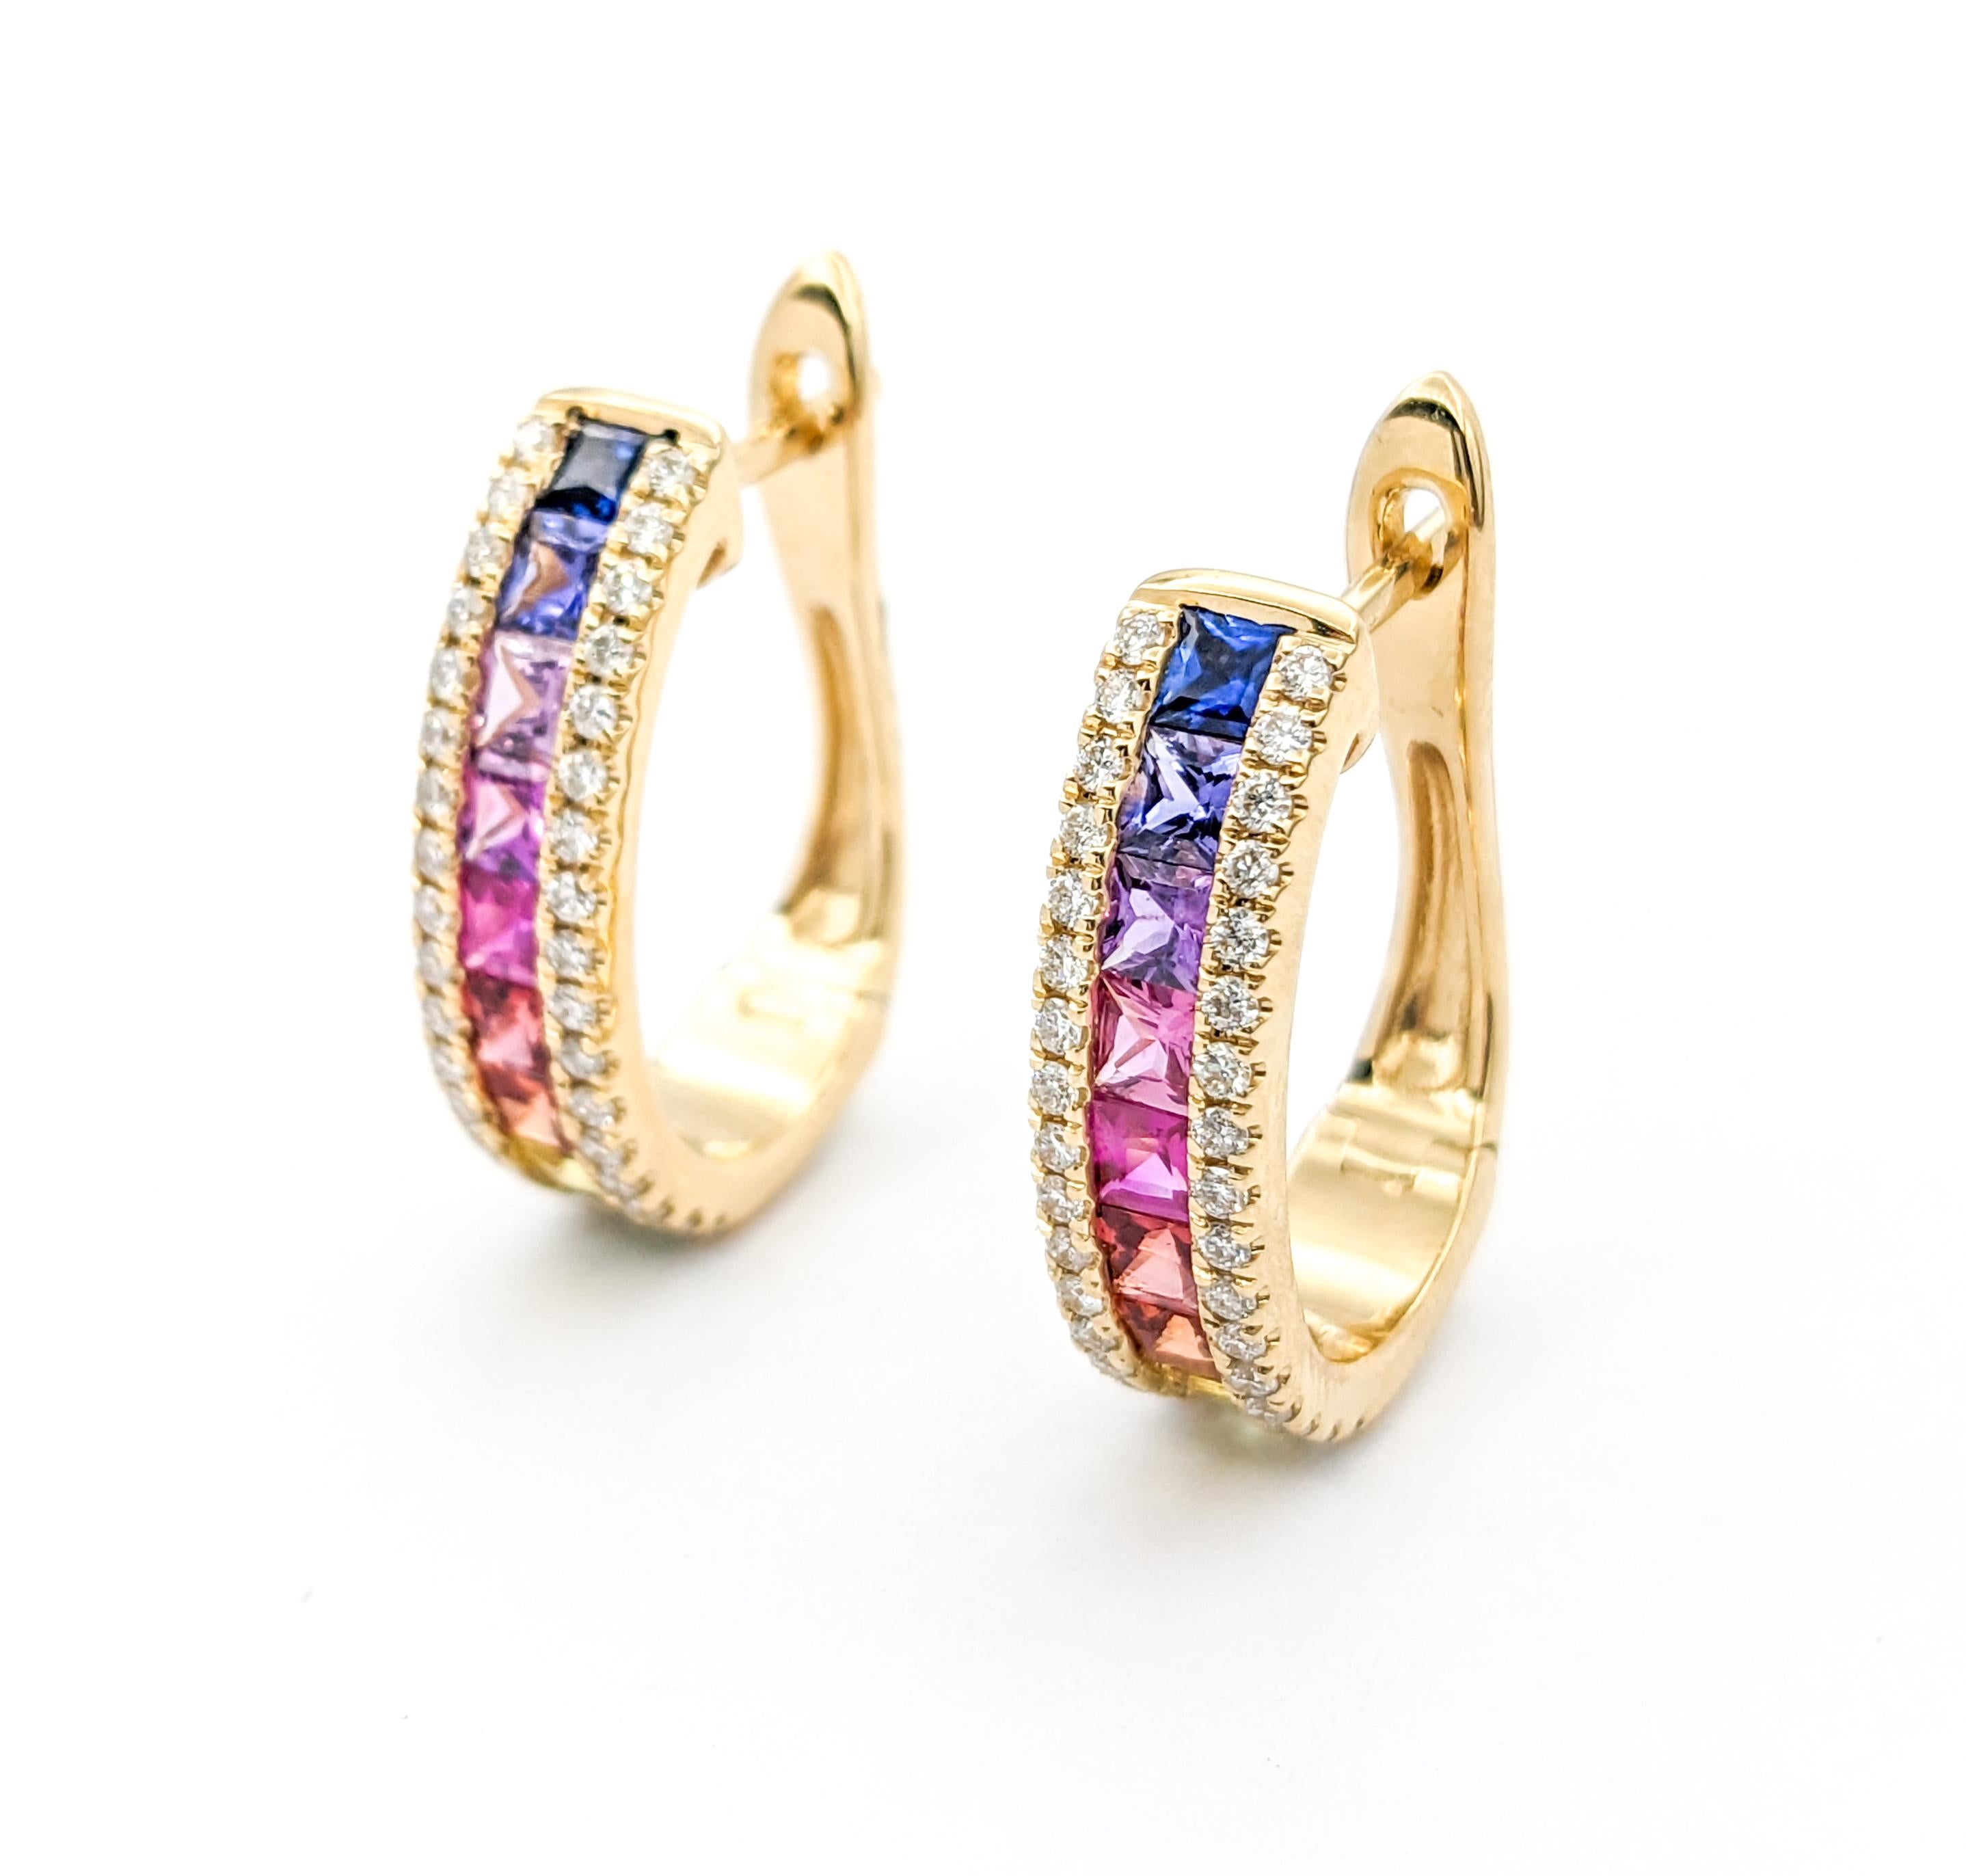 1.85ctw Multi-Color Sapphires & Diamond LeverBack Hoop Earrings In Yellow Gold (Boucles d'oreilles à levier en or jaune)

Voici ces magnifiques boucles d'oreilles en or jaune 14k, ornées de diamants de 0,45ctw et d'un saphir multicolore de 1,85ctw.